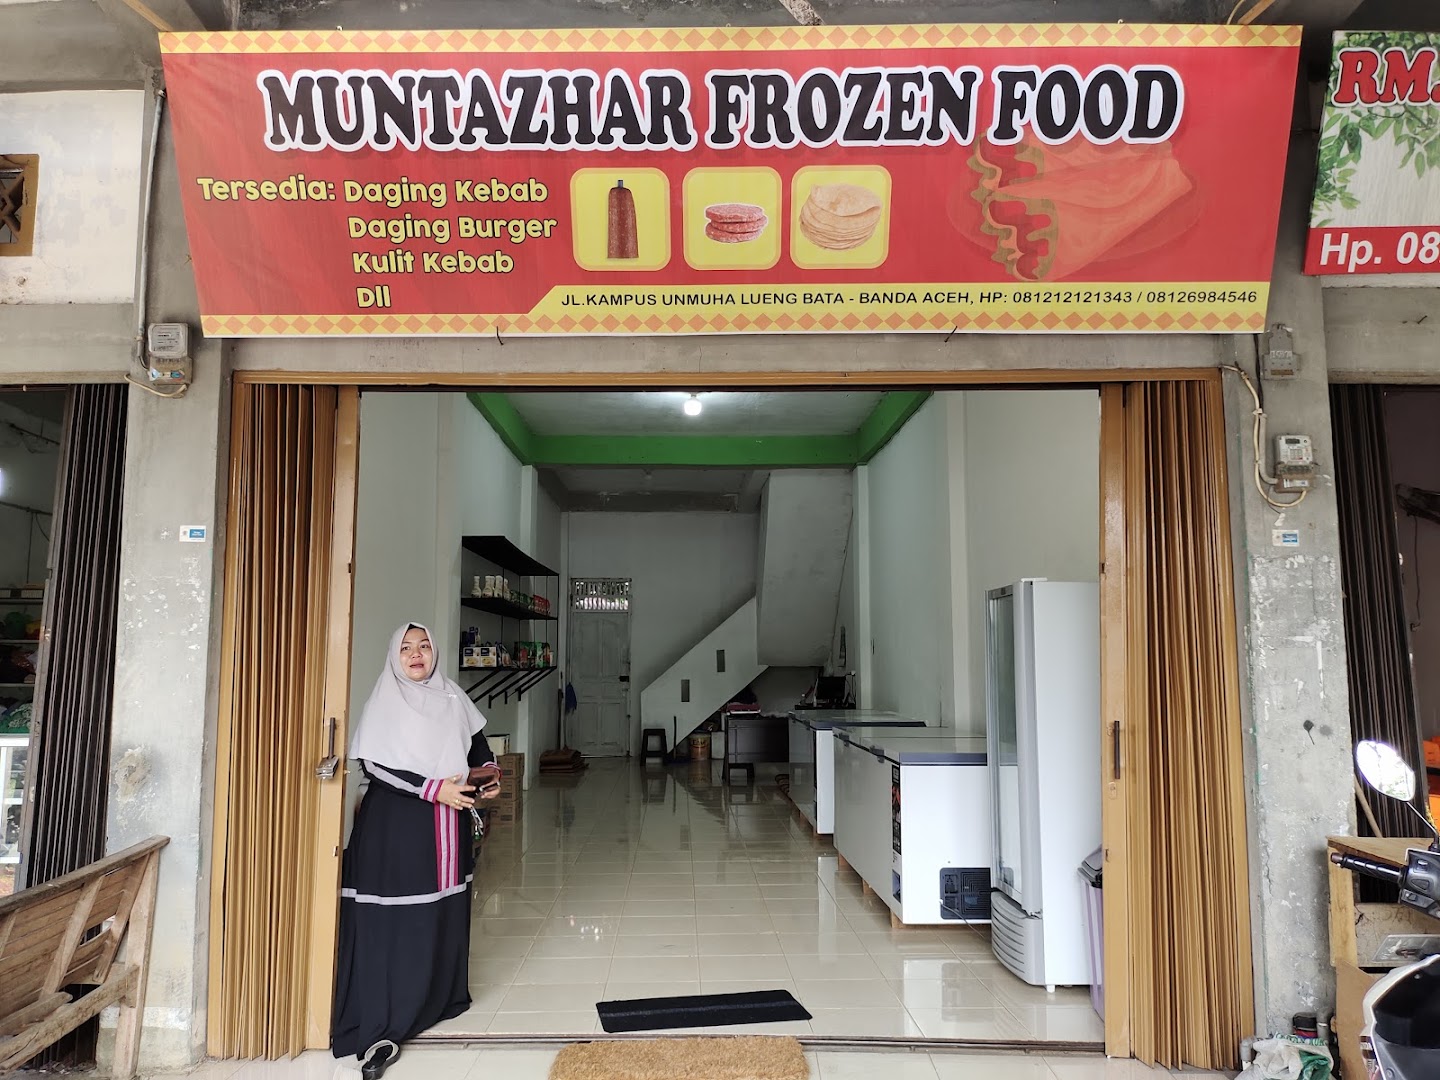 Muntazhar Frozen Food Photo